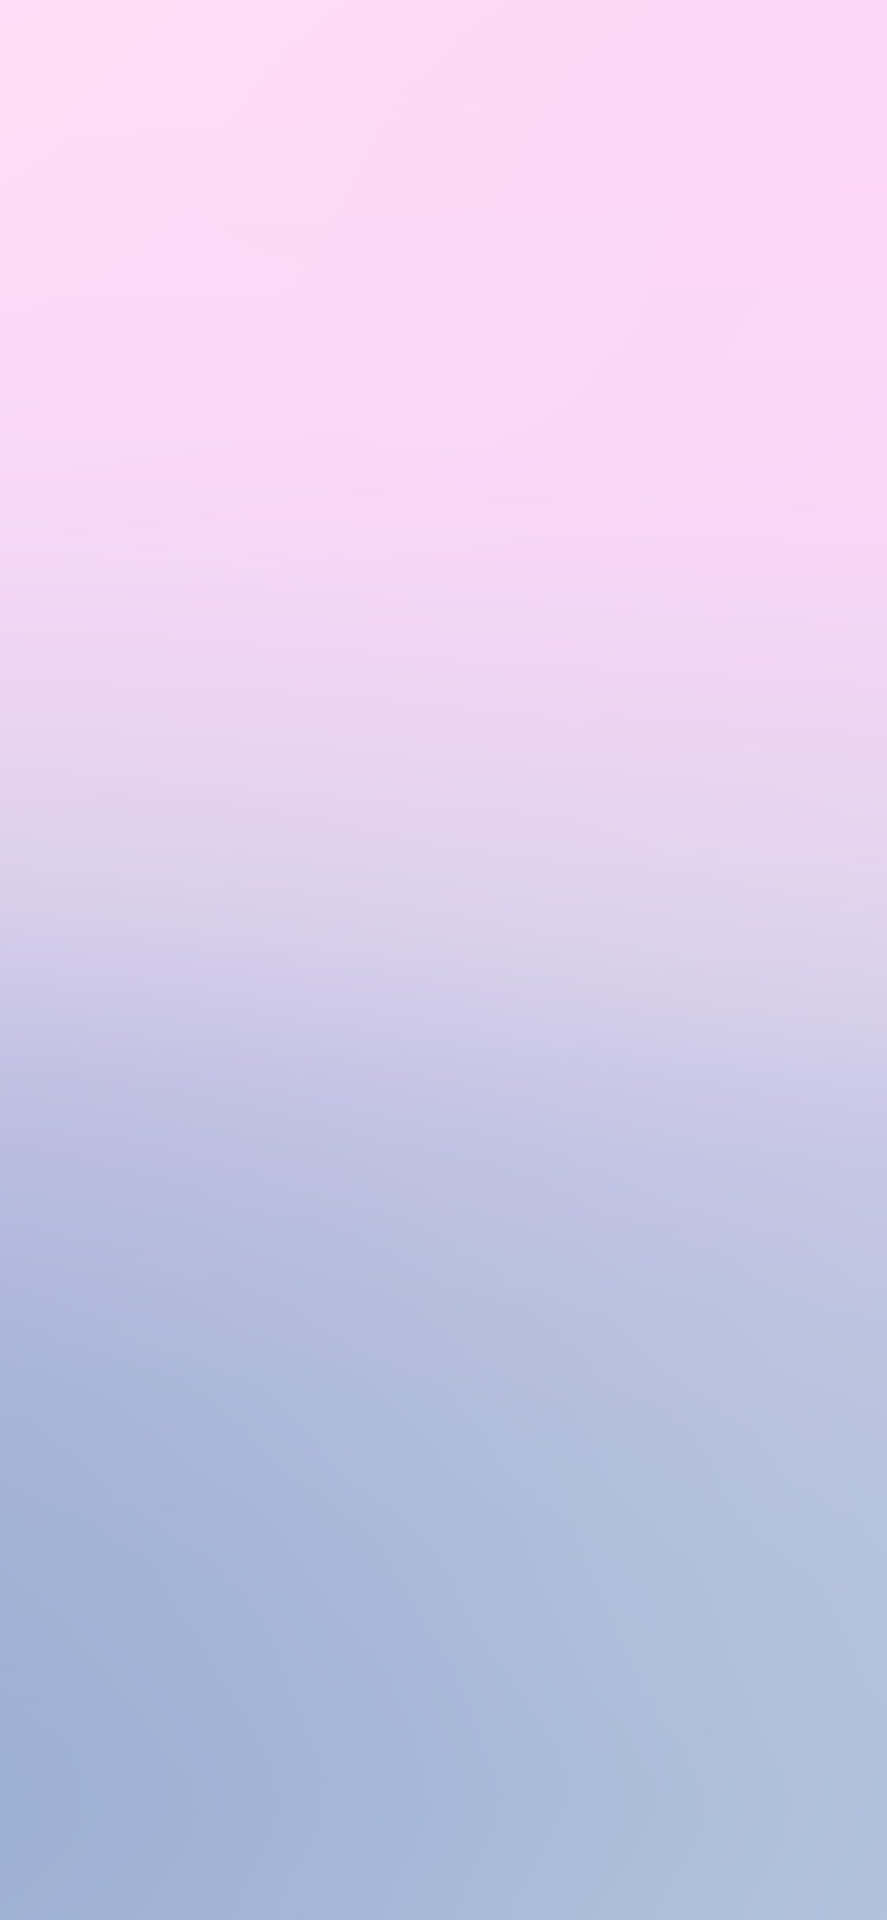 Lebendigesblau Und Hübsches Pink Mischen Sich Zu Einer Perfekten Pastell-palette. Wallpaper